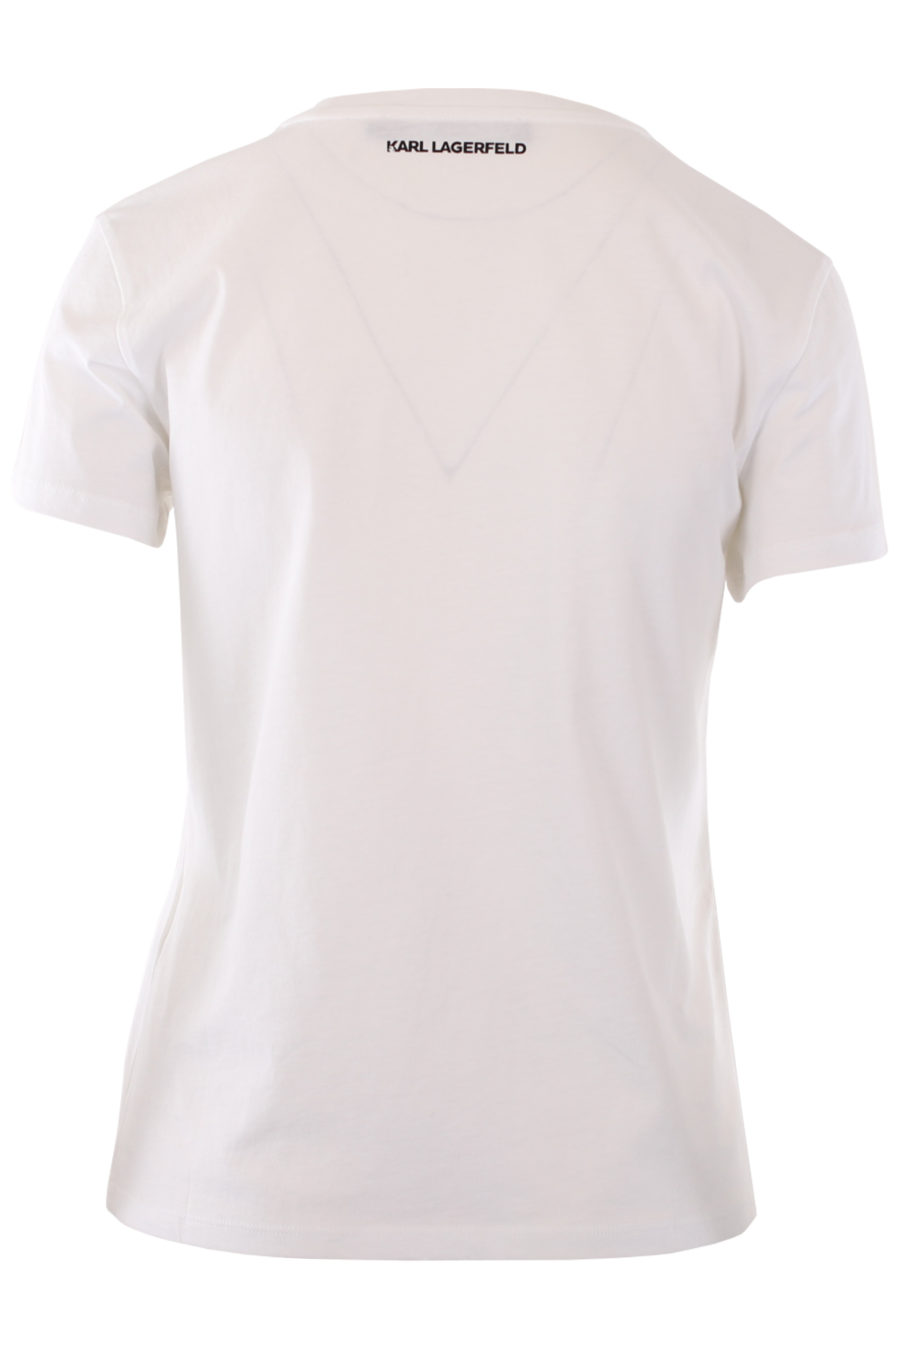 Camiseta blanca con logo multicolor de goma - IMG 0812